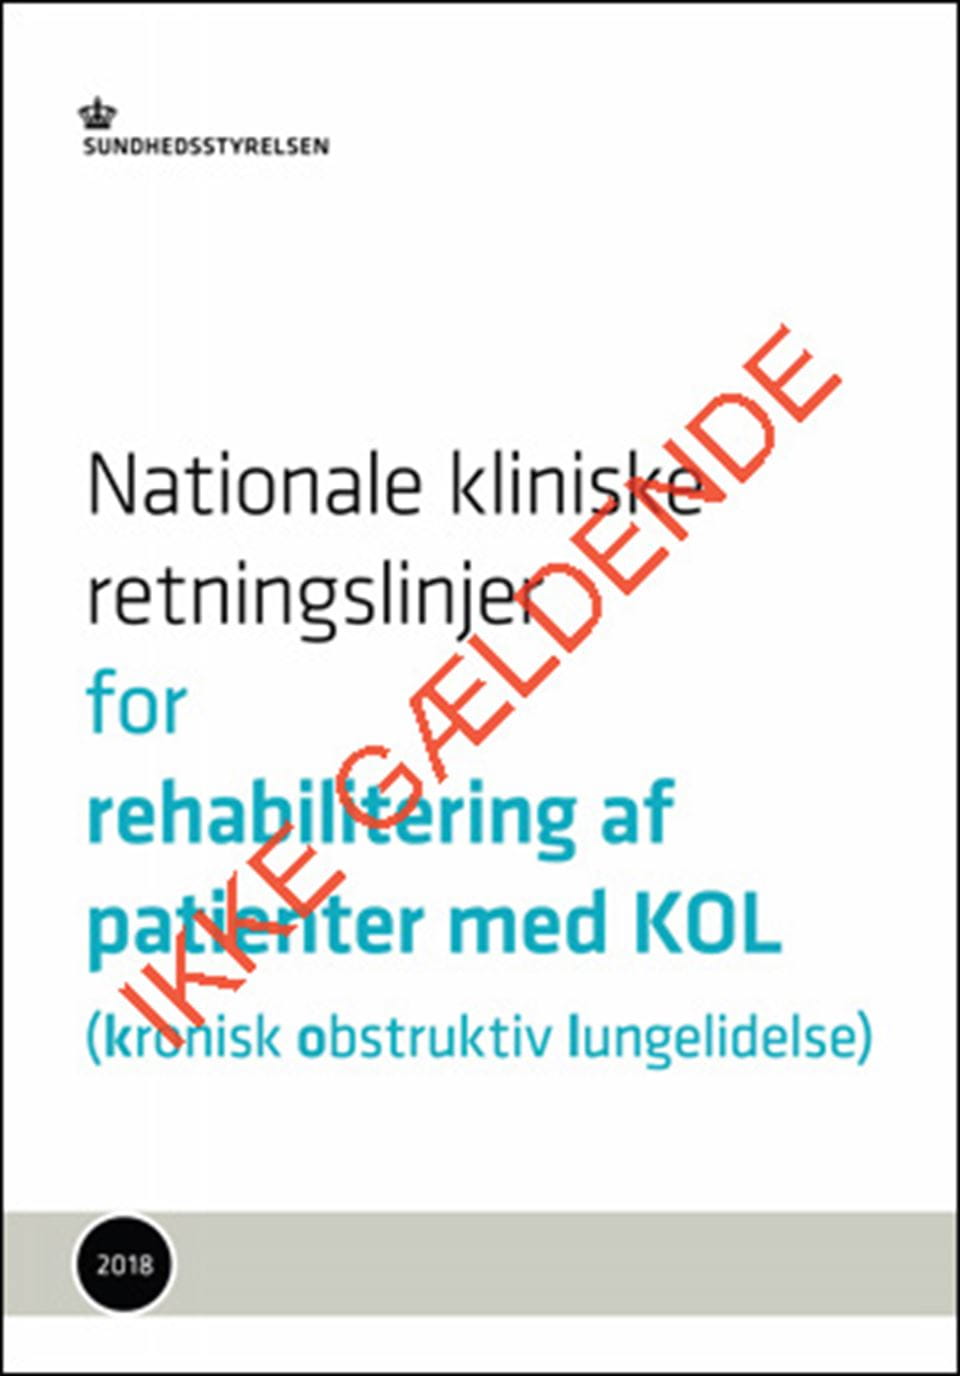 NKR: Rehabilitering af patienter med KOL - ikke gældende